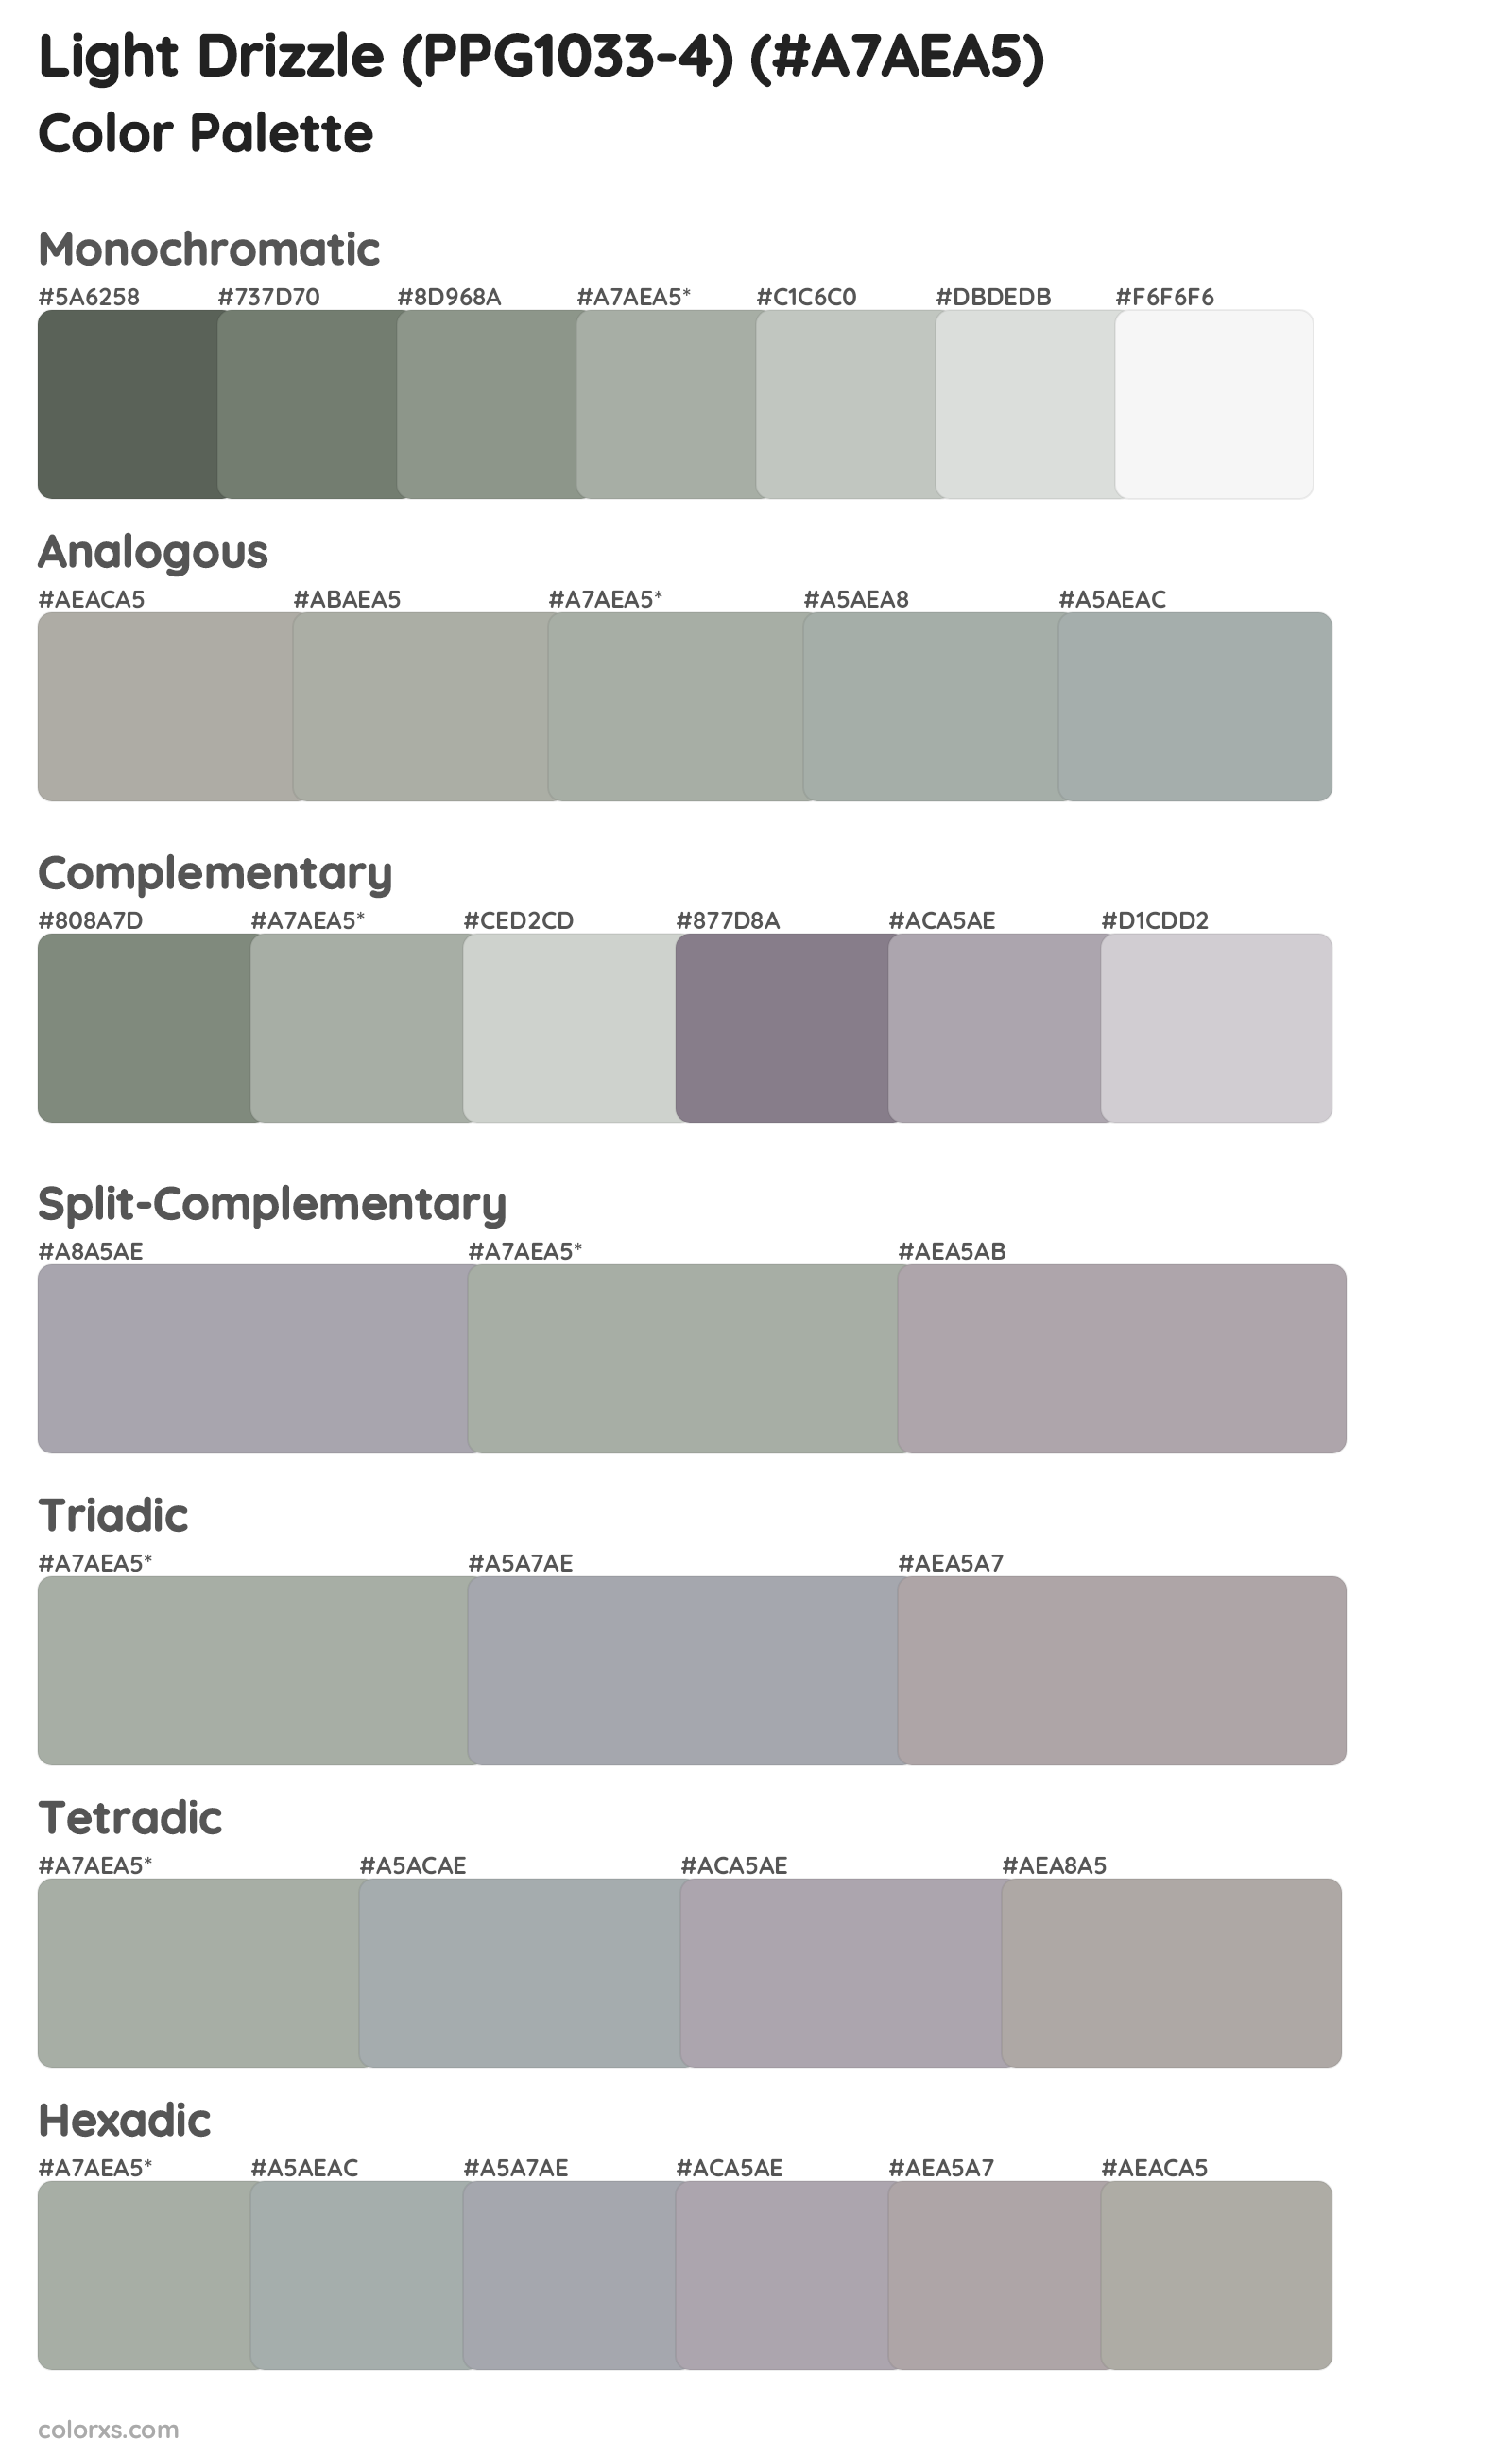 Light Drizzle (PPG1033-4) Color Scheme Palettes